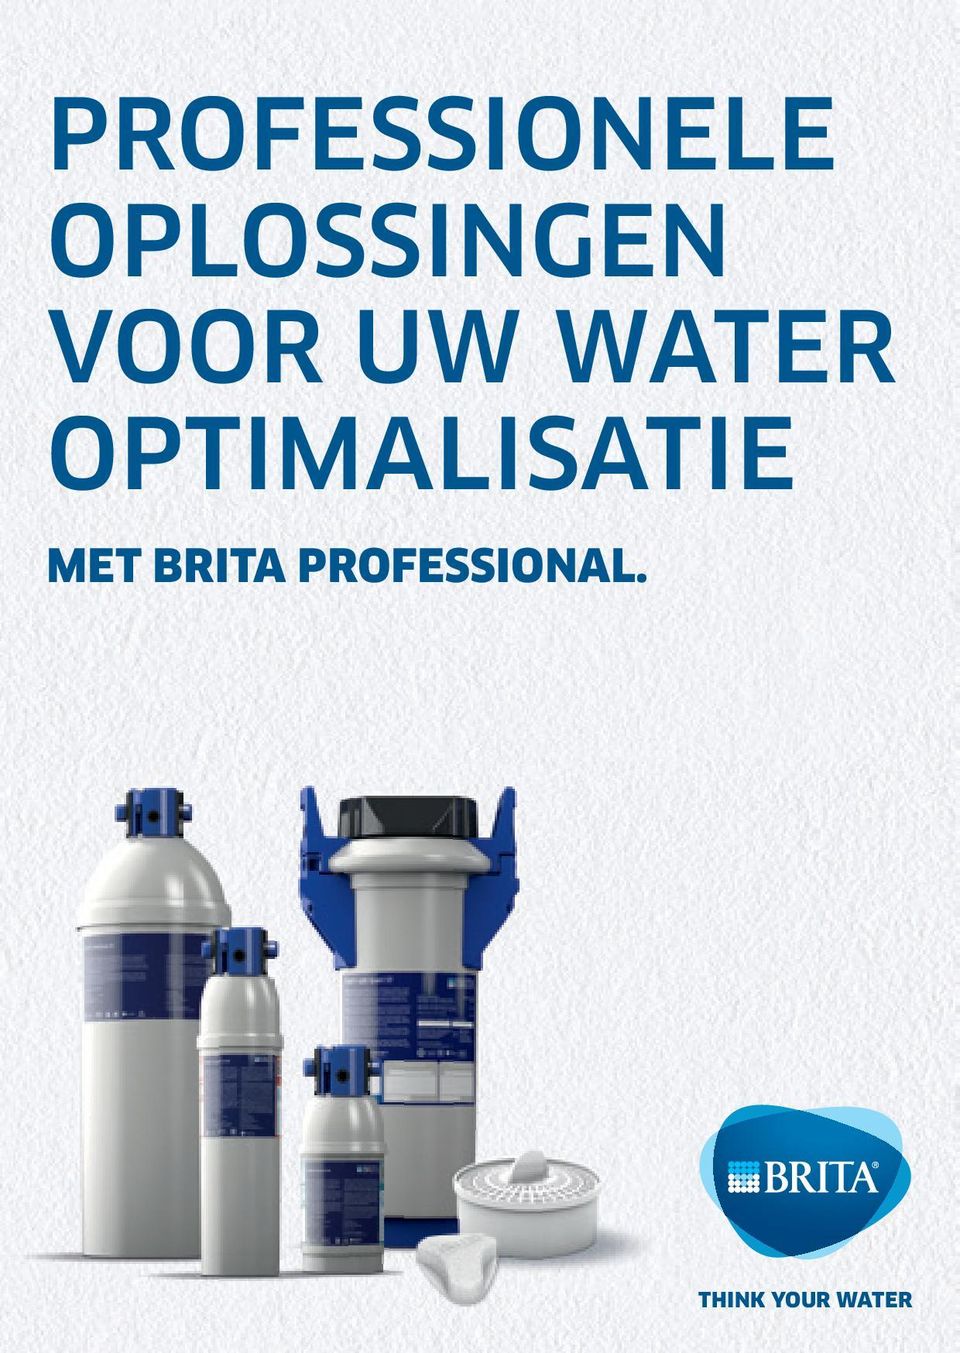 WATER OPTIMALISATIE MET